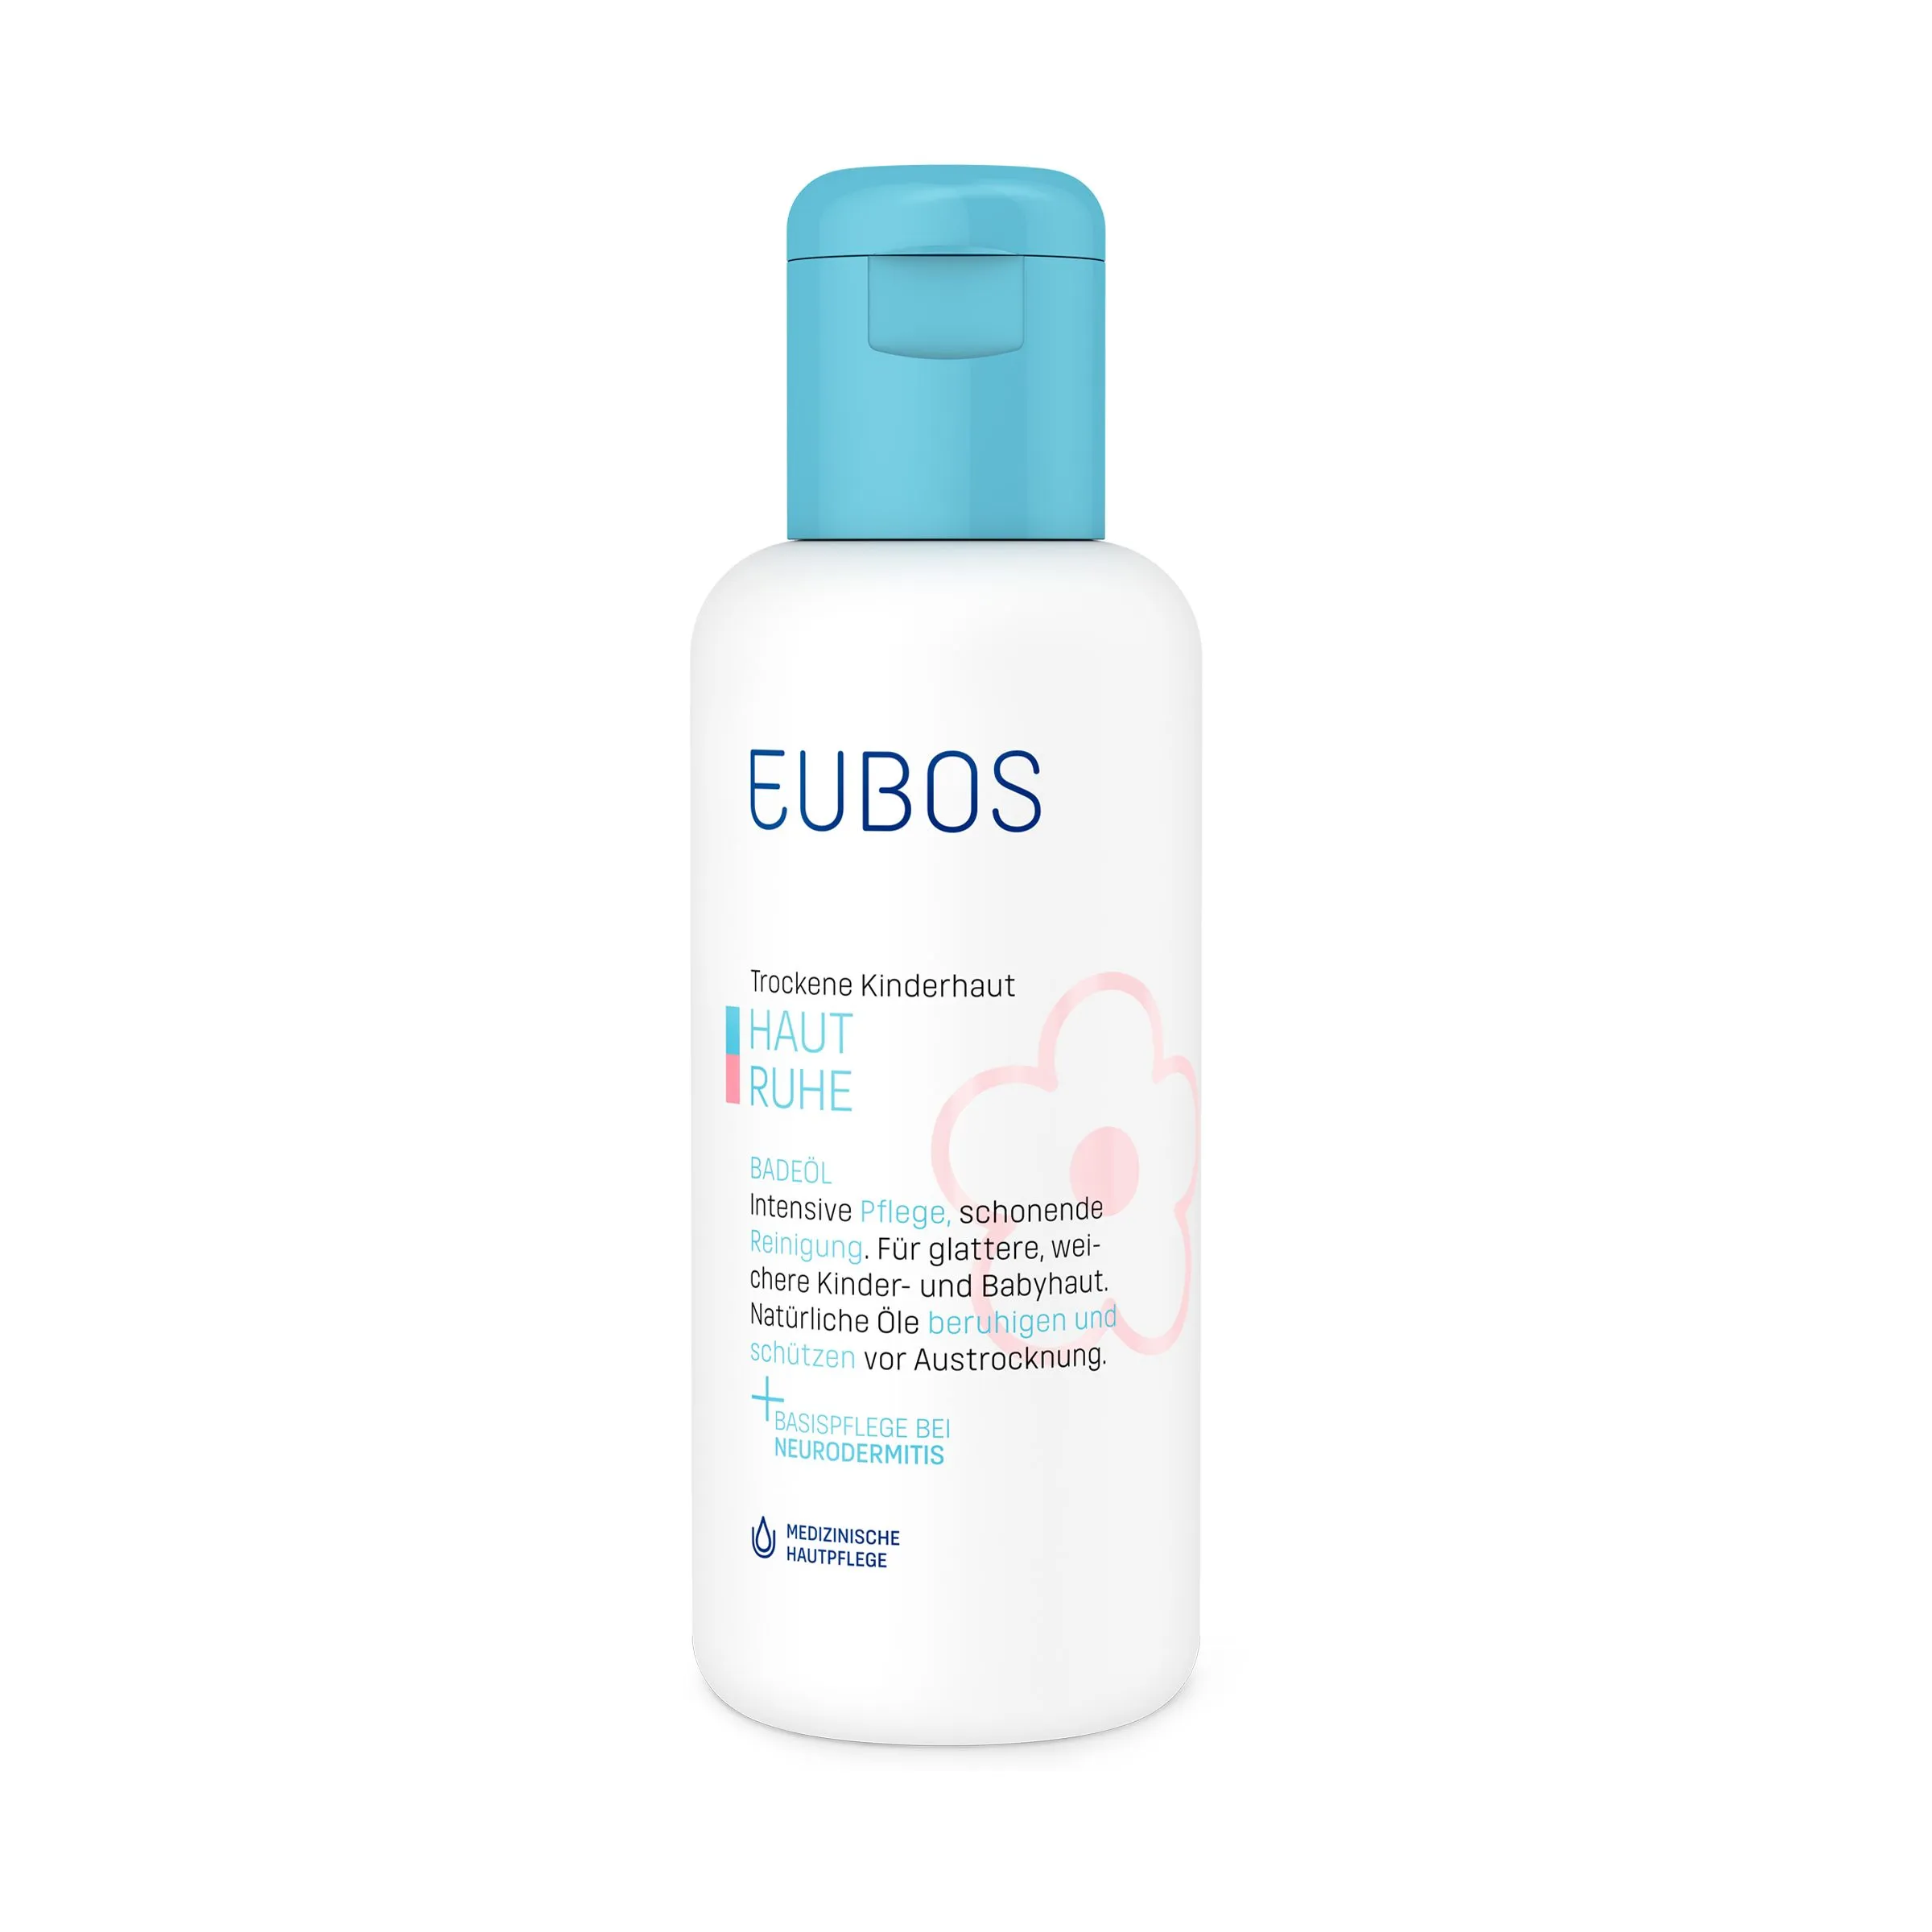 Eubos Haut Ruhe Bath Oil 125ml 1×125 ml